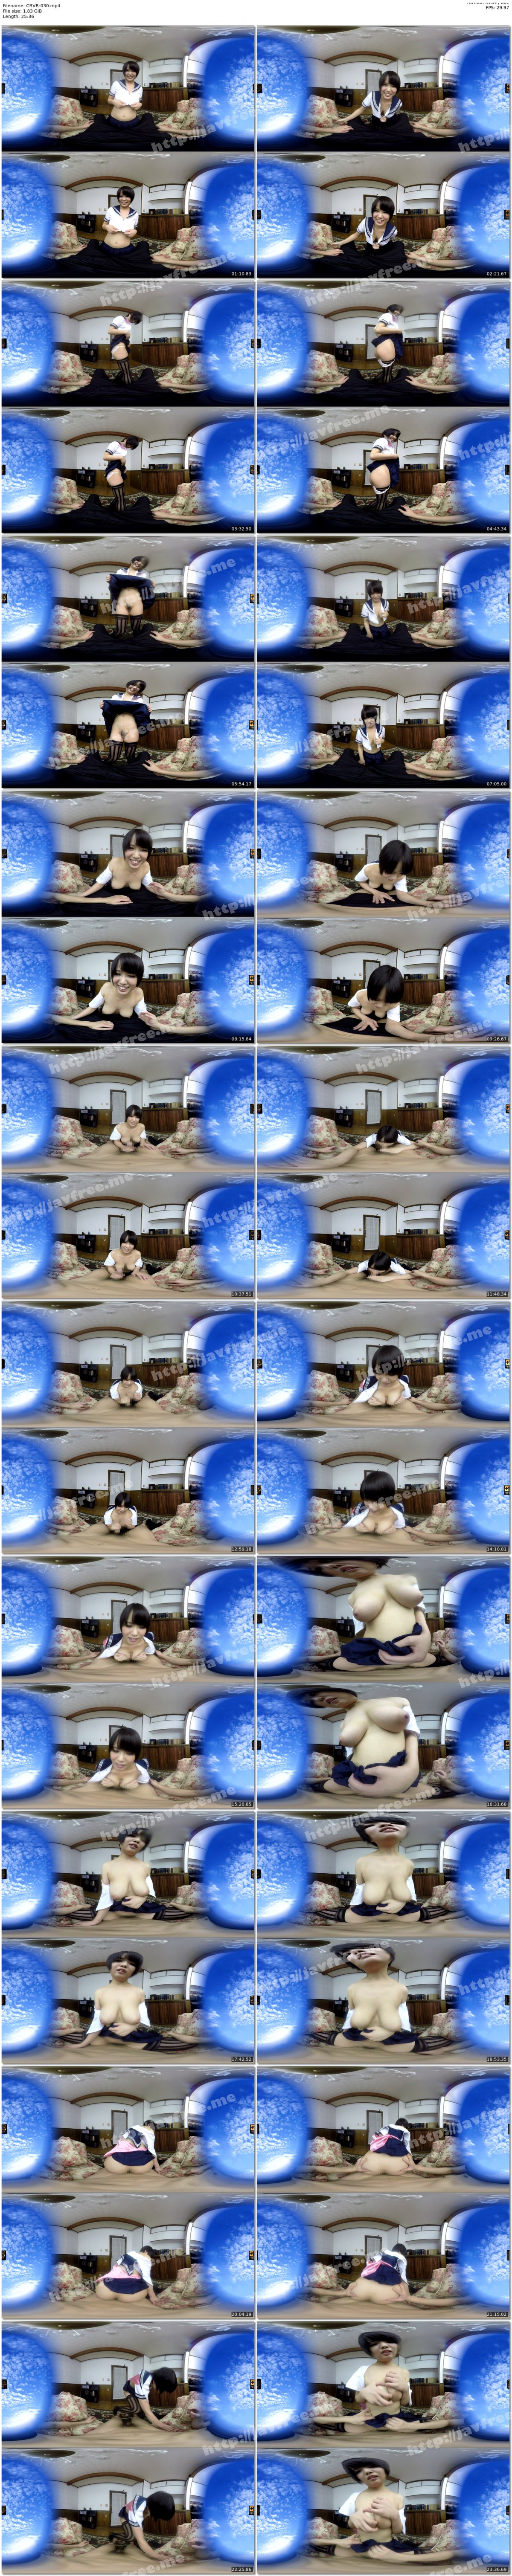 [CRVR-030] 【VR】真田美樹 巨乳でナイスボディなボクの彼女は誰もがうらやむ挑発コスプレ彼女 - image CRVR-030 on https://javfree.me